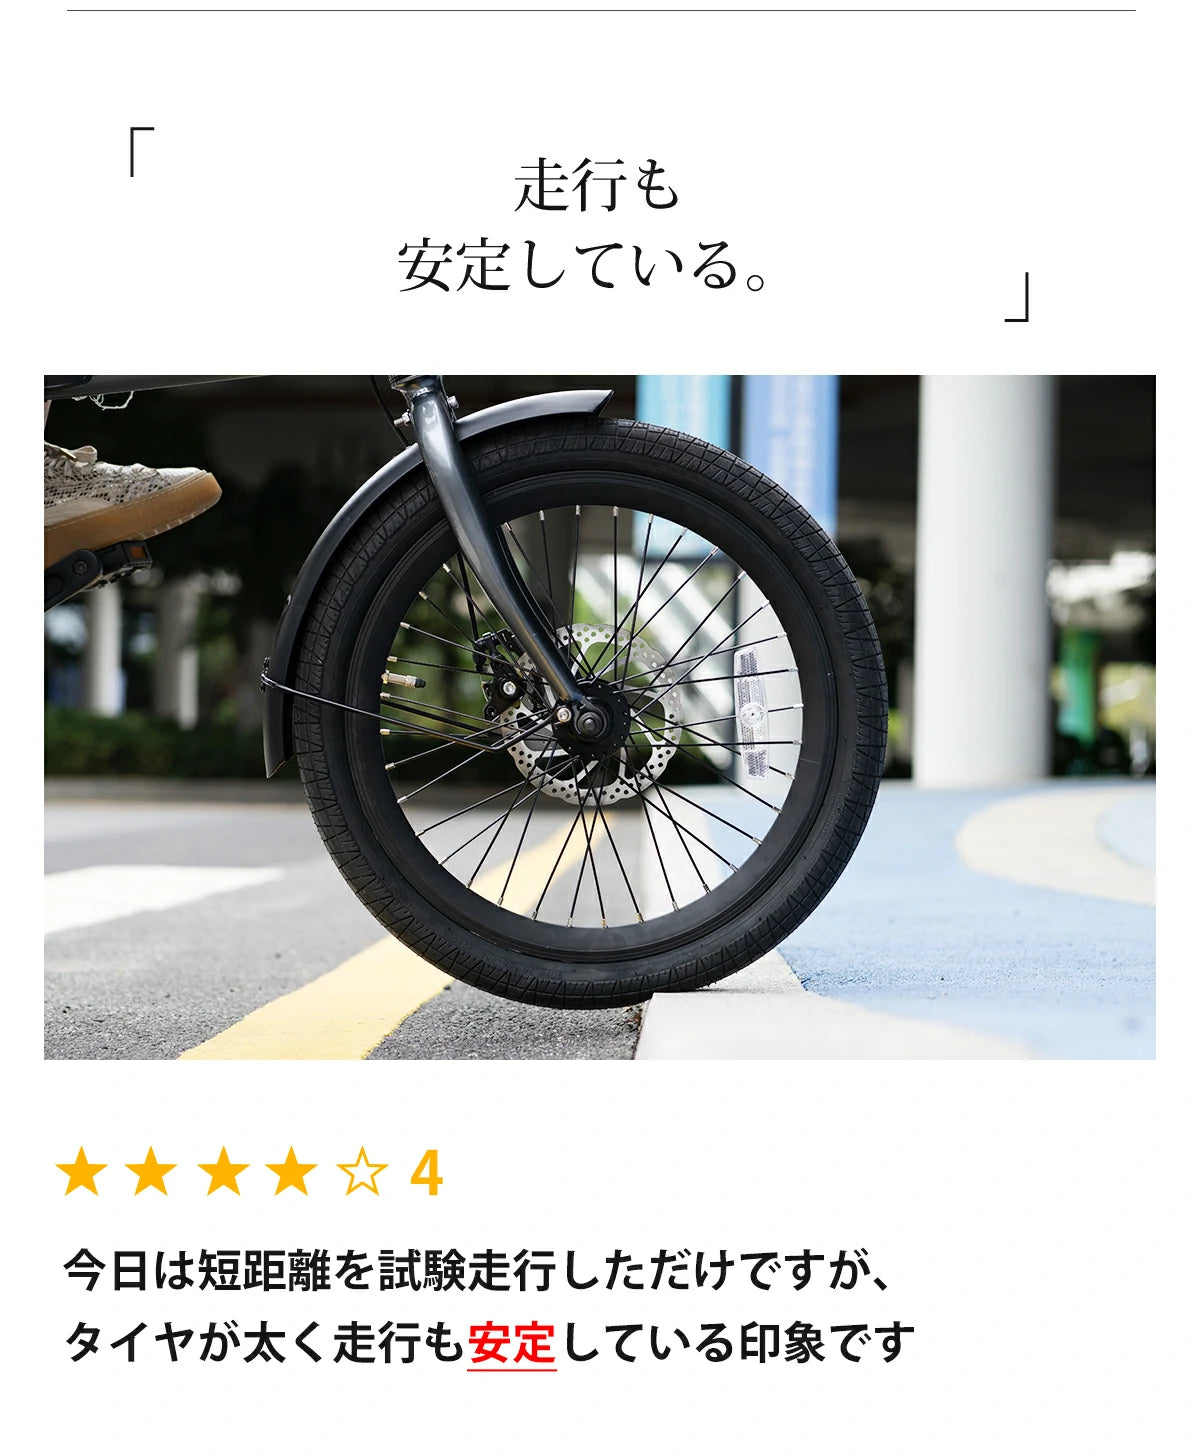 安定感のあるタイヤの太さ、折りたたみ電動アシスト自転車 ERWAY A01